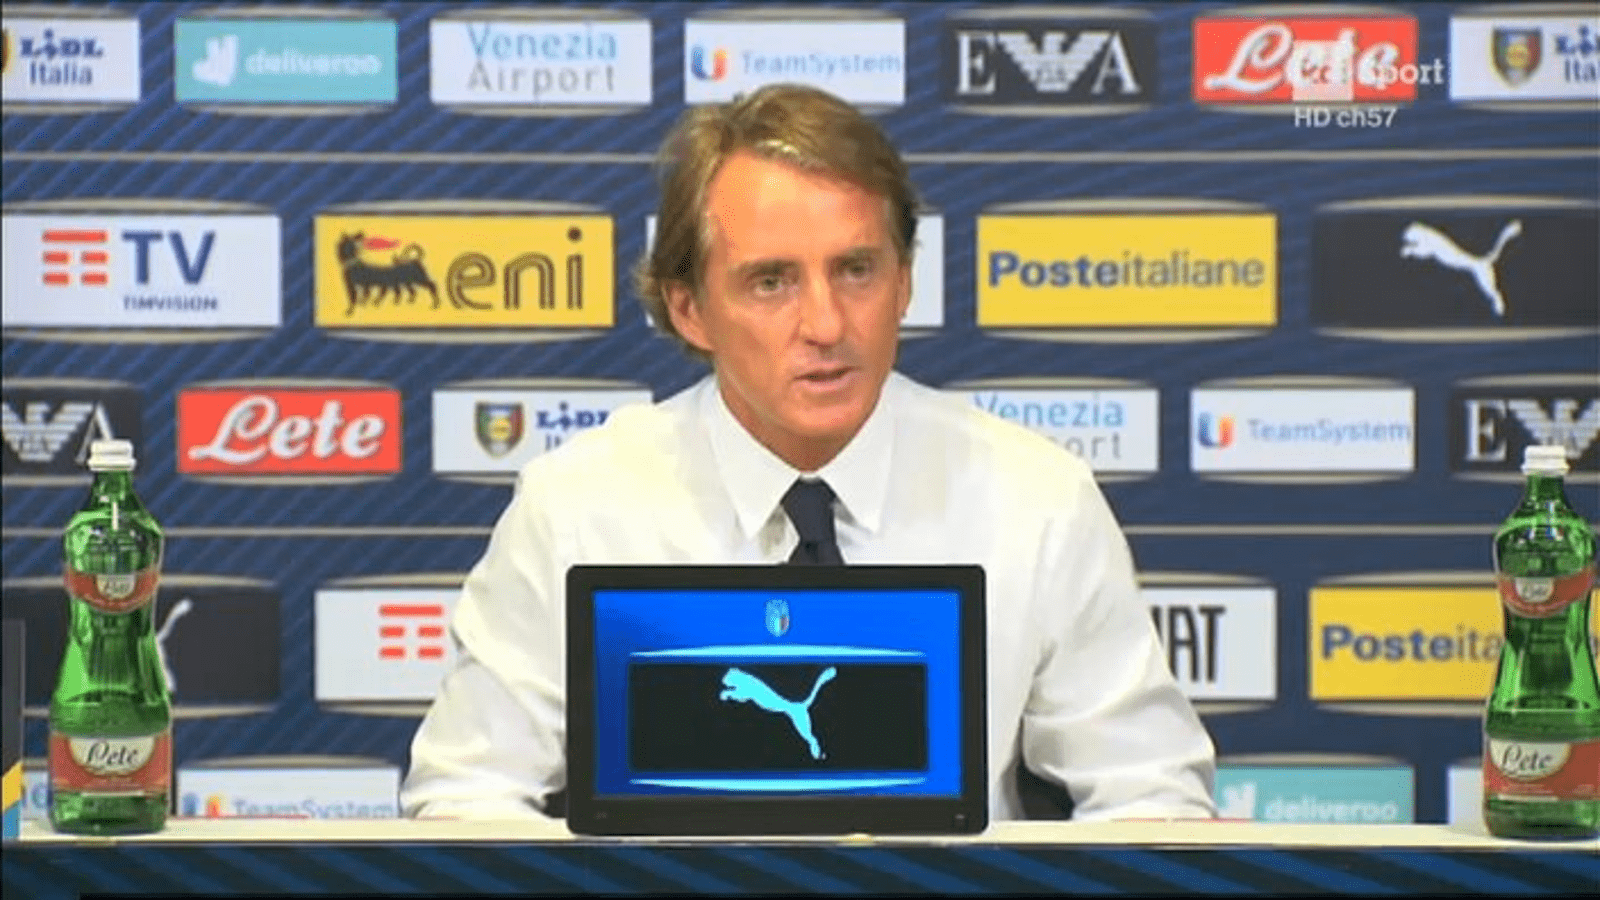 Malta Italia (0 2), Mancini: “Retegui goleador, convocare altri oriundi è una possibilità”